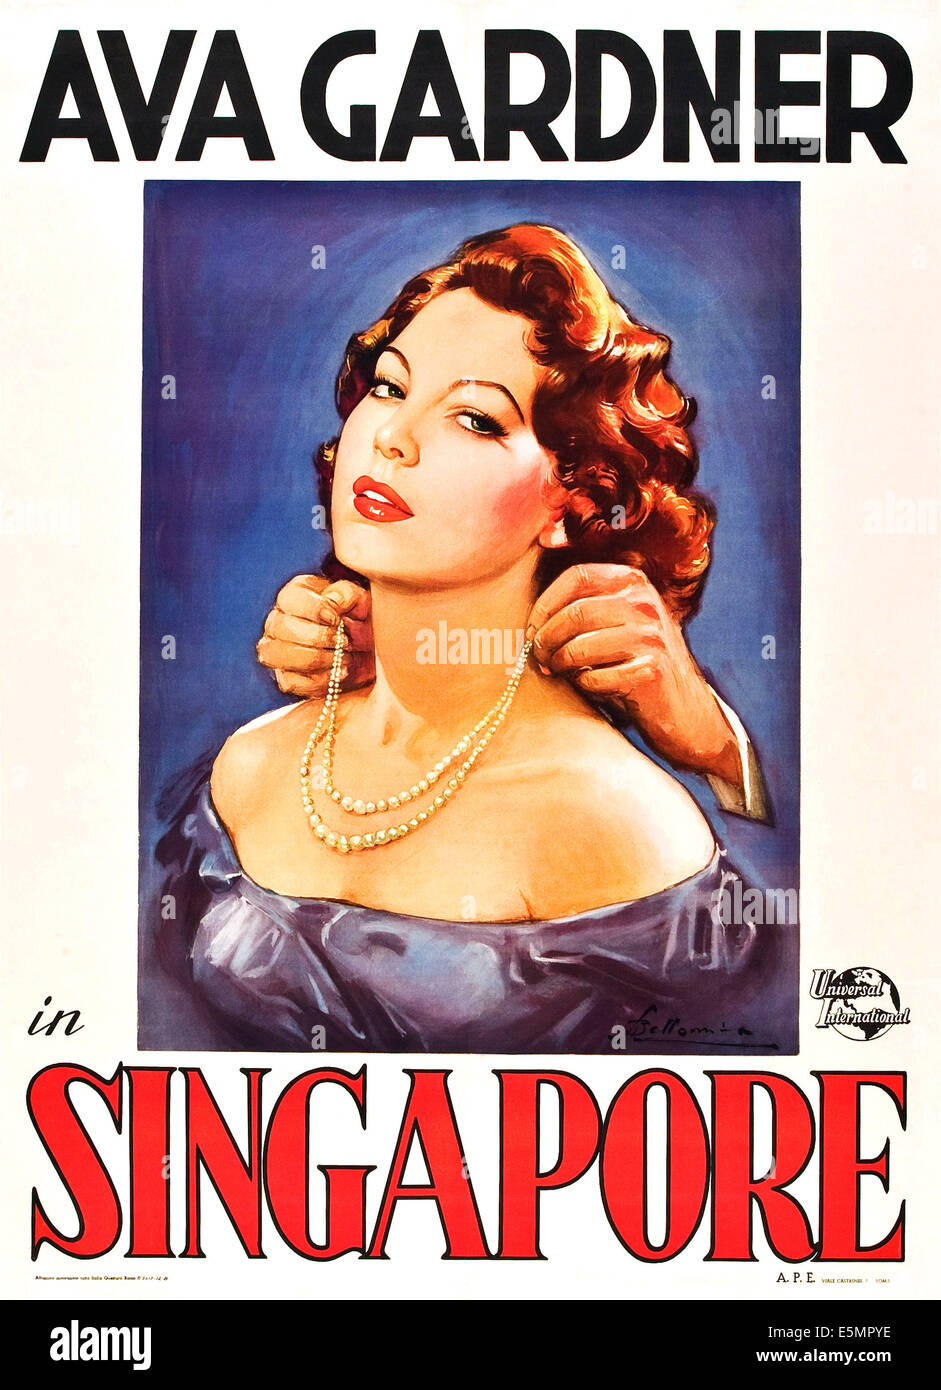 SINGAPORE, Ava Gardner on poster art, 1947. Stock Photo